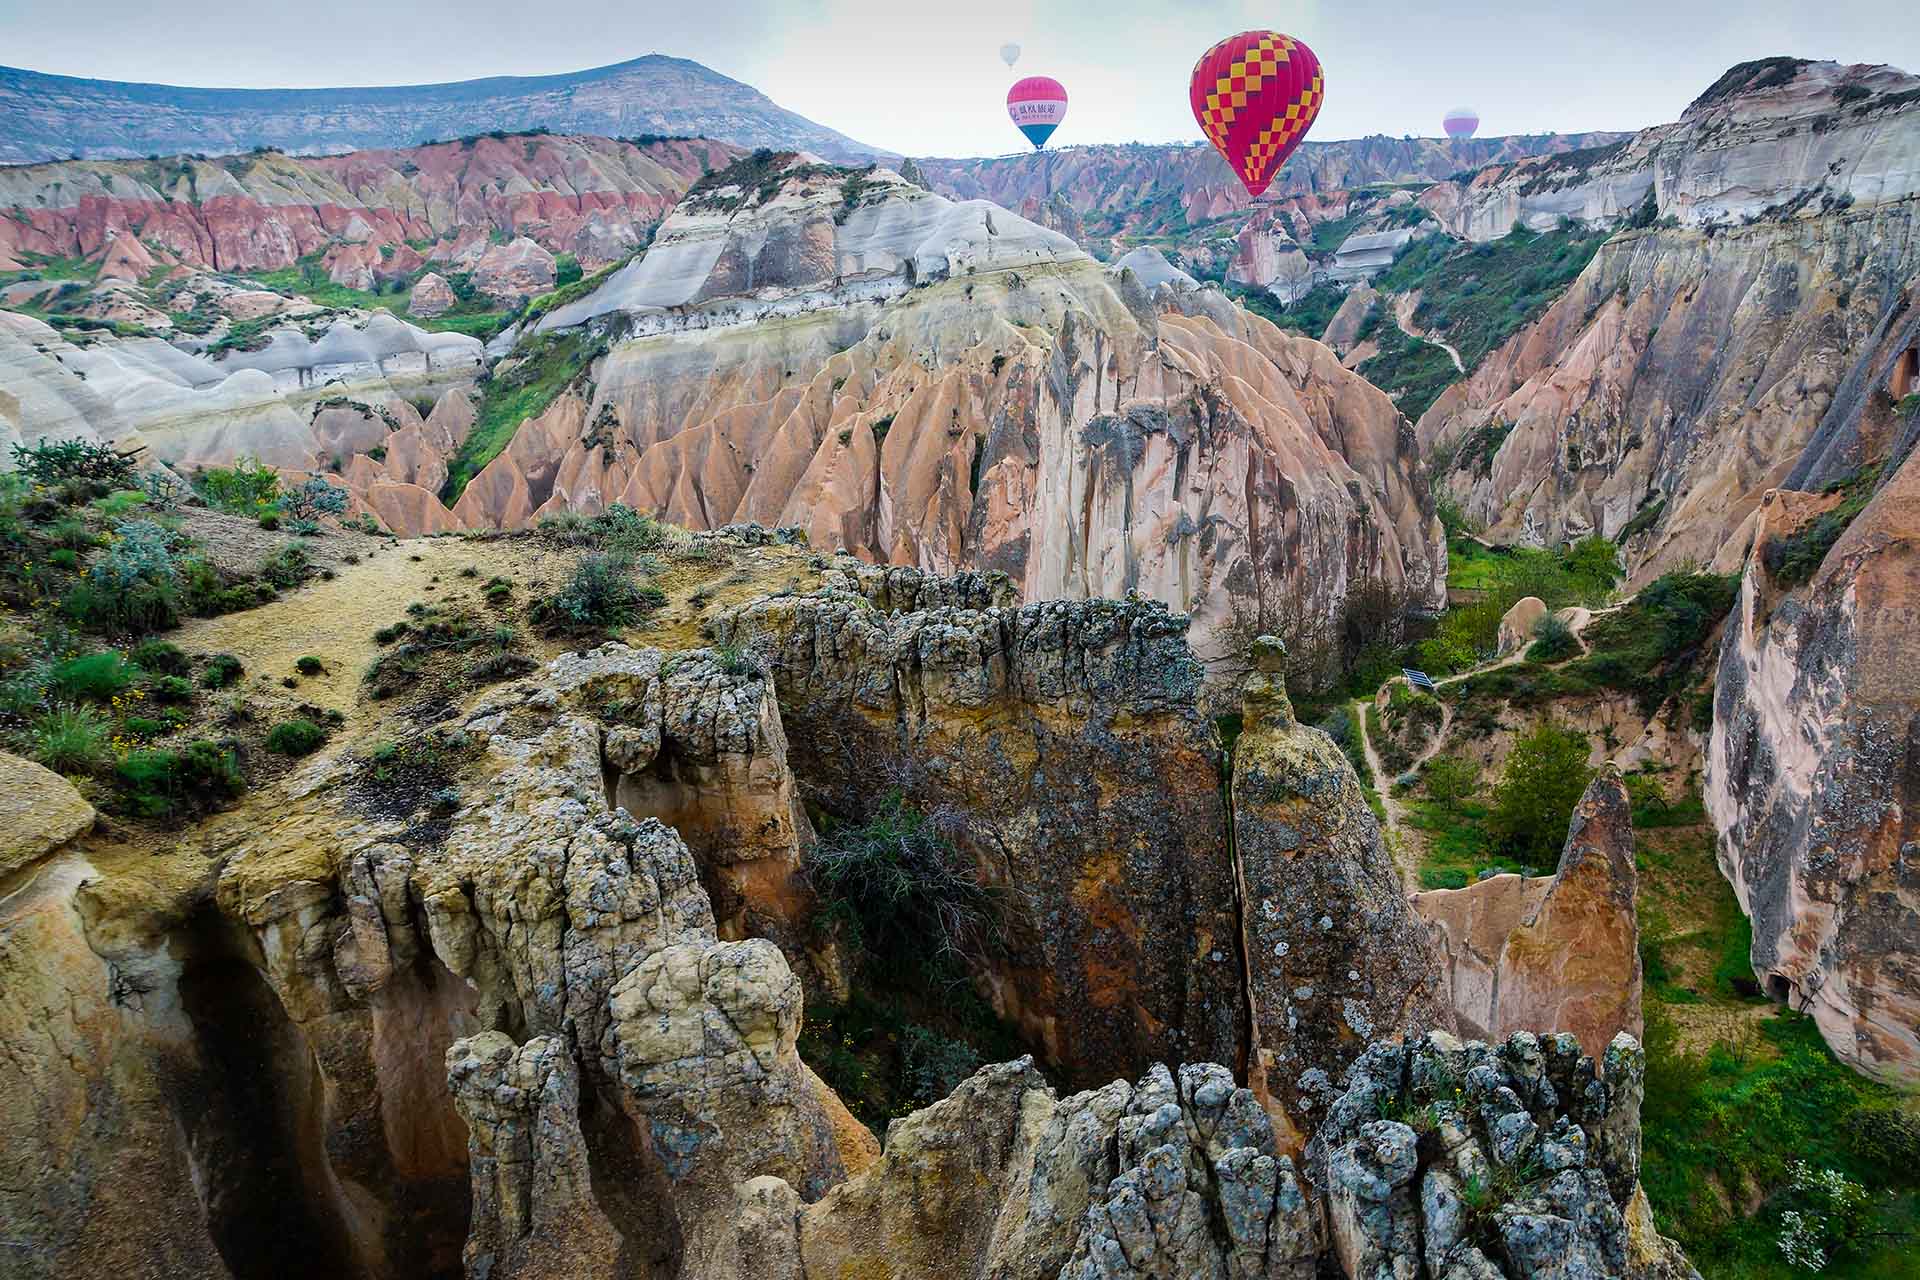 luchtballonnen boven een grillige vallei in Cappadocië